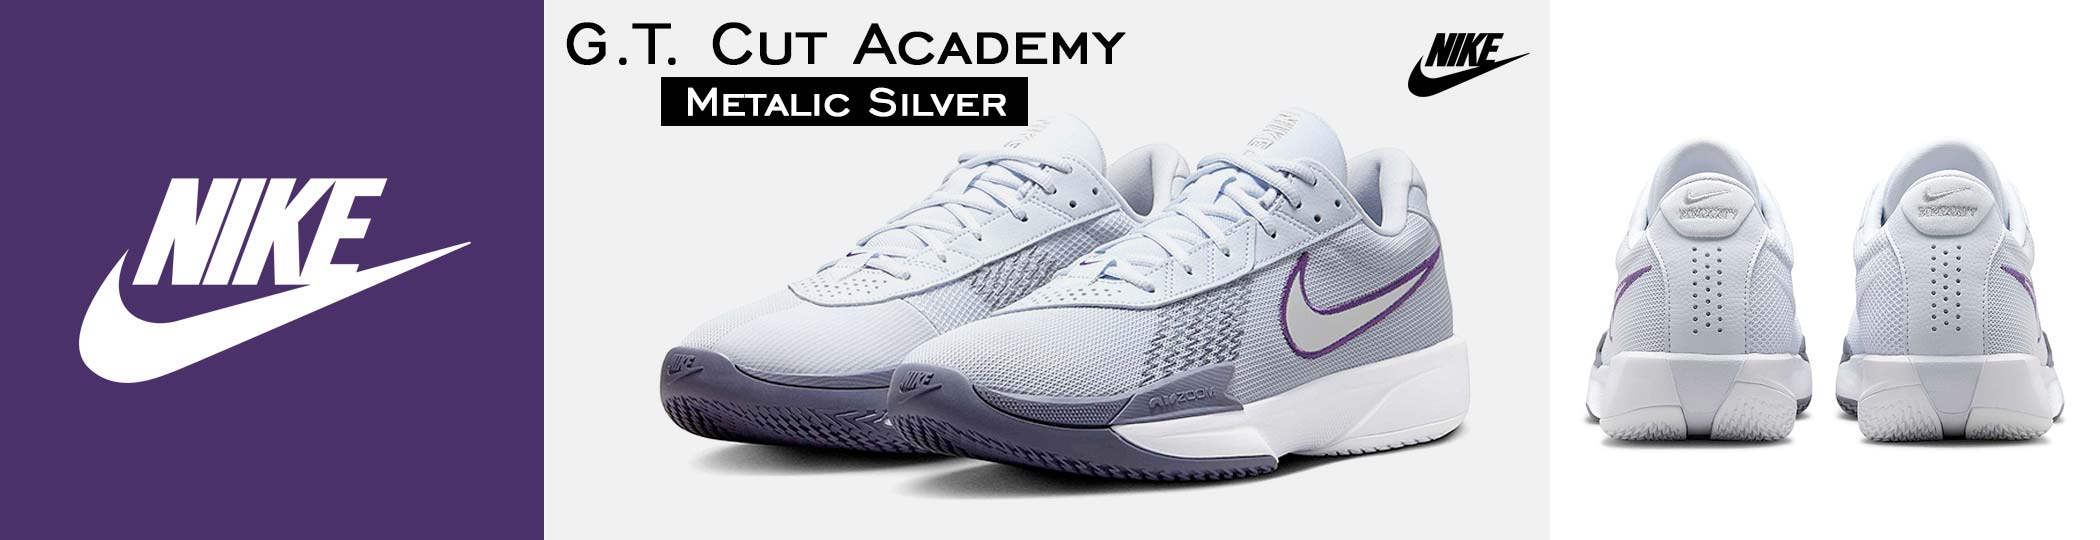 Nike G.T. Cut Academy - Metalic Silver